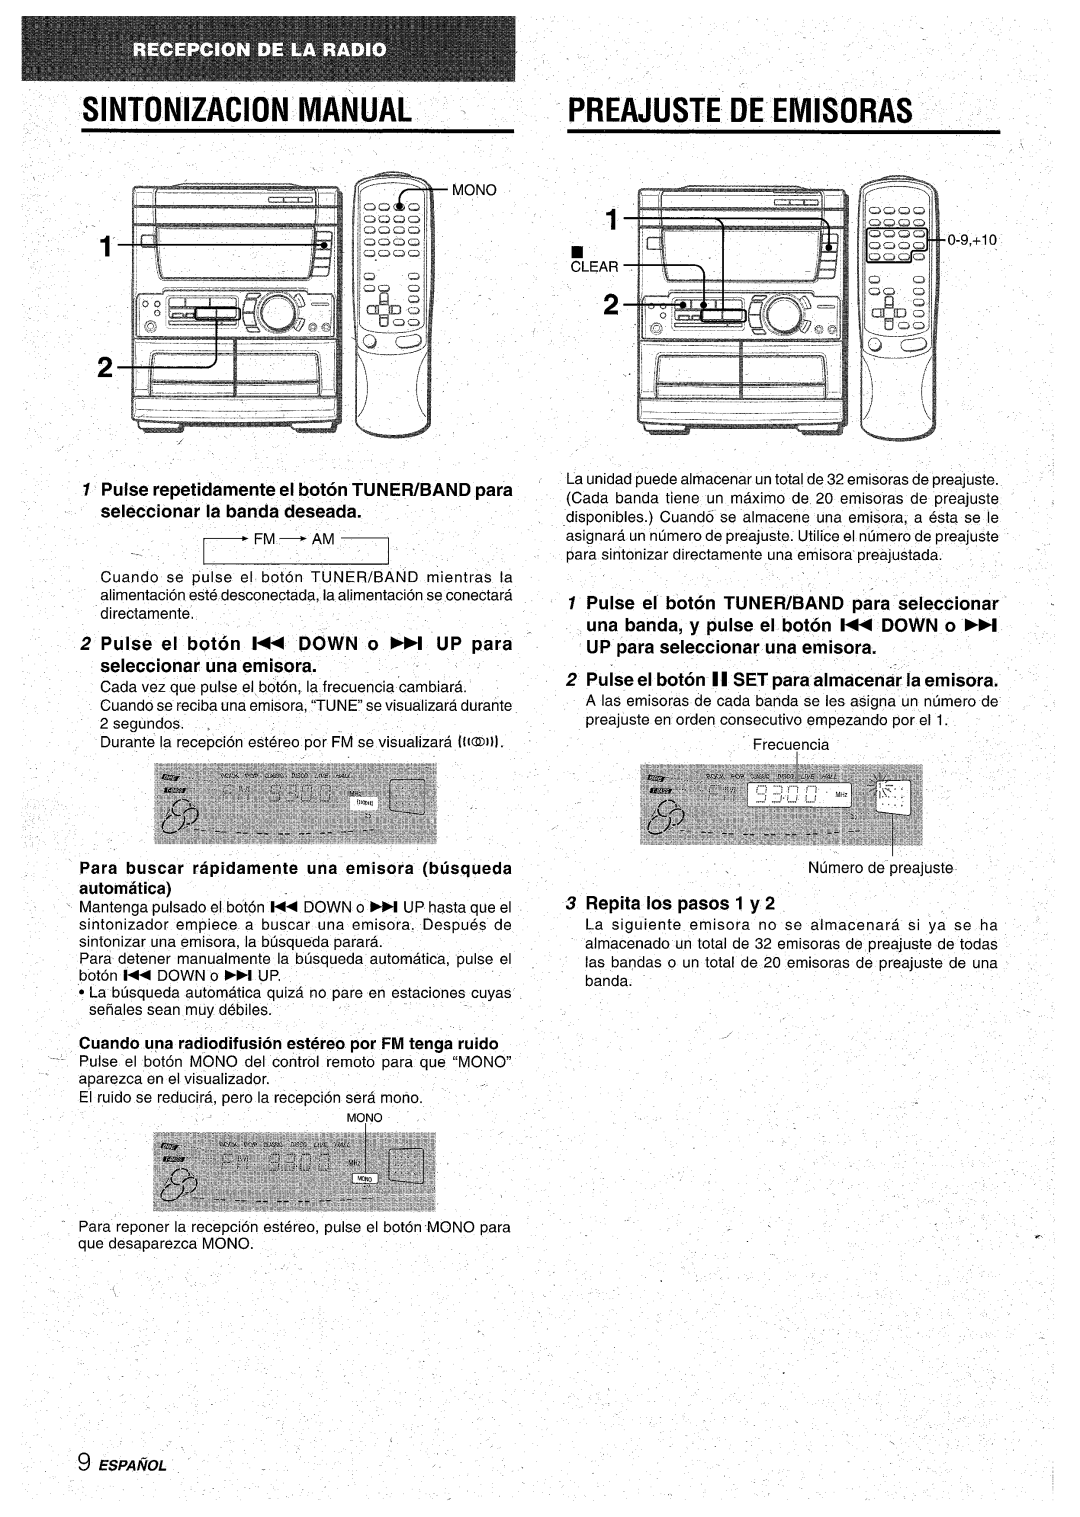 Aiwa CX-NA71 Sintonizacion, Manual, Preajuste, Pulse repetidamente el boton TUNEWBAND para, seleccionar la banda deseada 